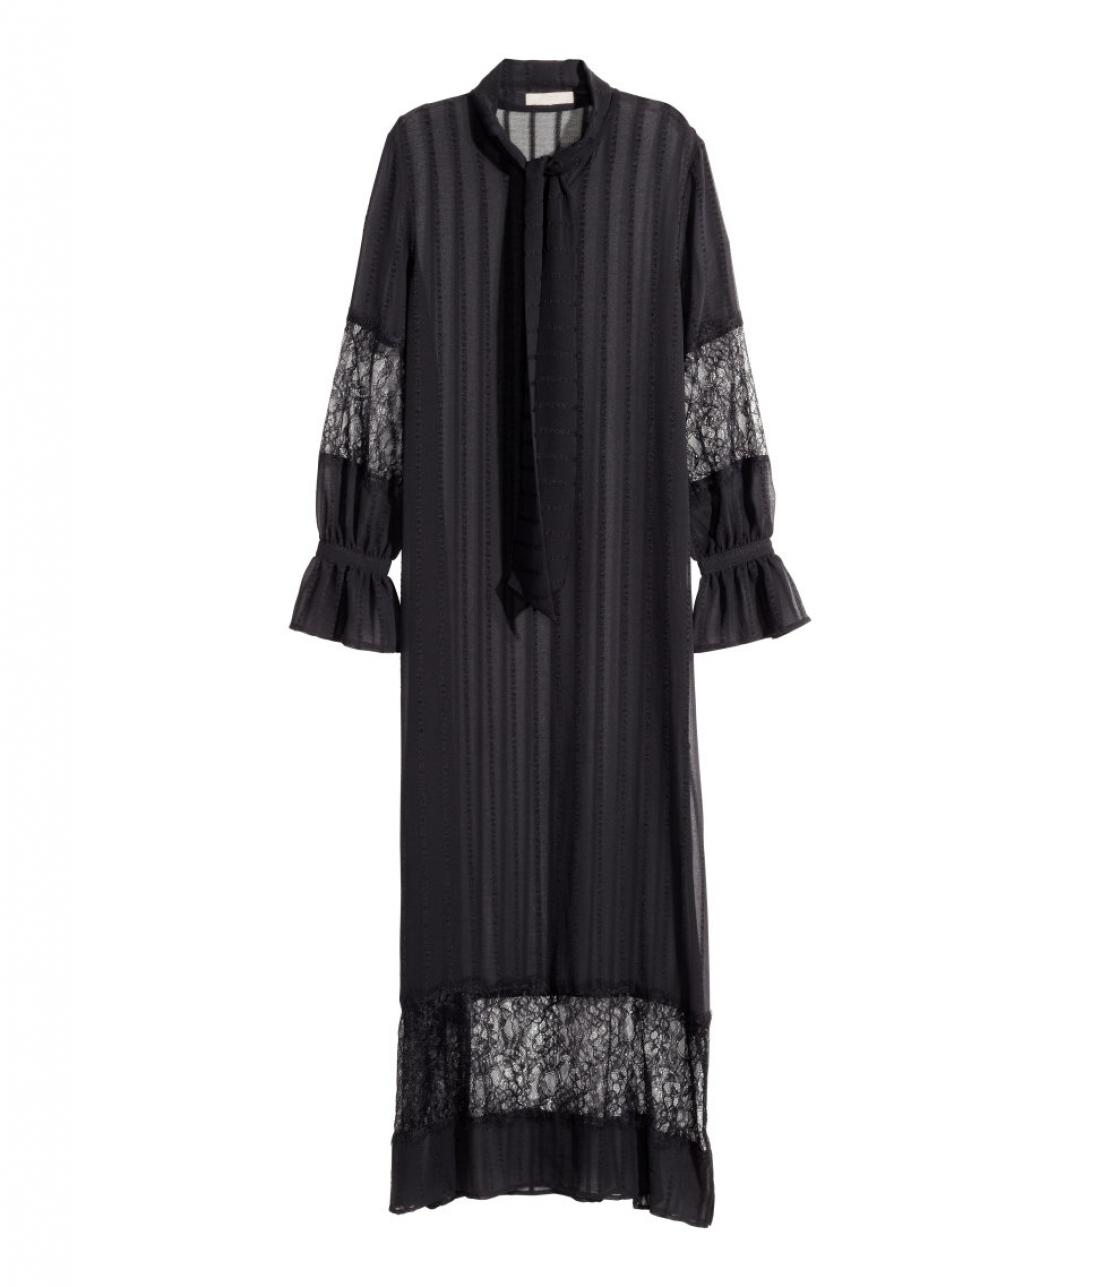 Gotska moda se dobi tudi po dostopnih cenah, obleka iz H&M stane 59,99 evra.